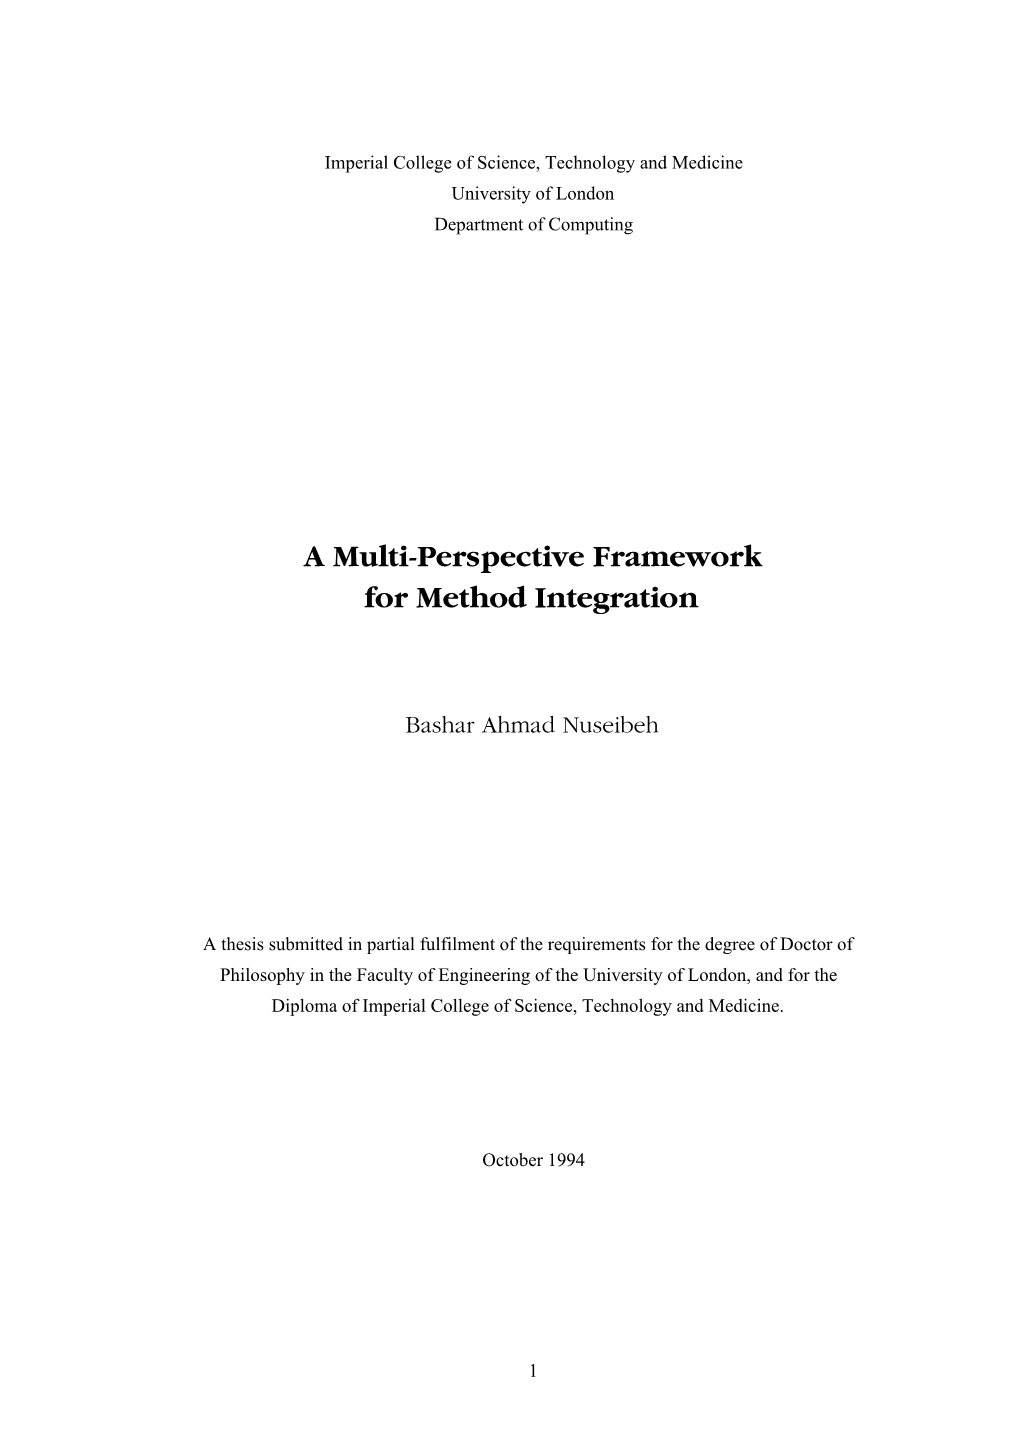 A Multi-Perspective Framework for Method Integration